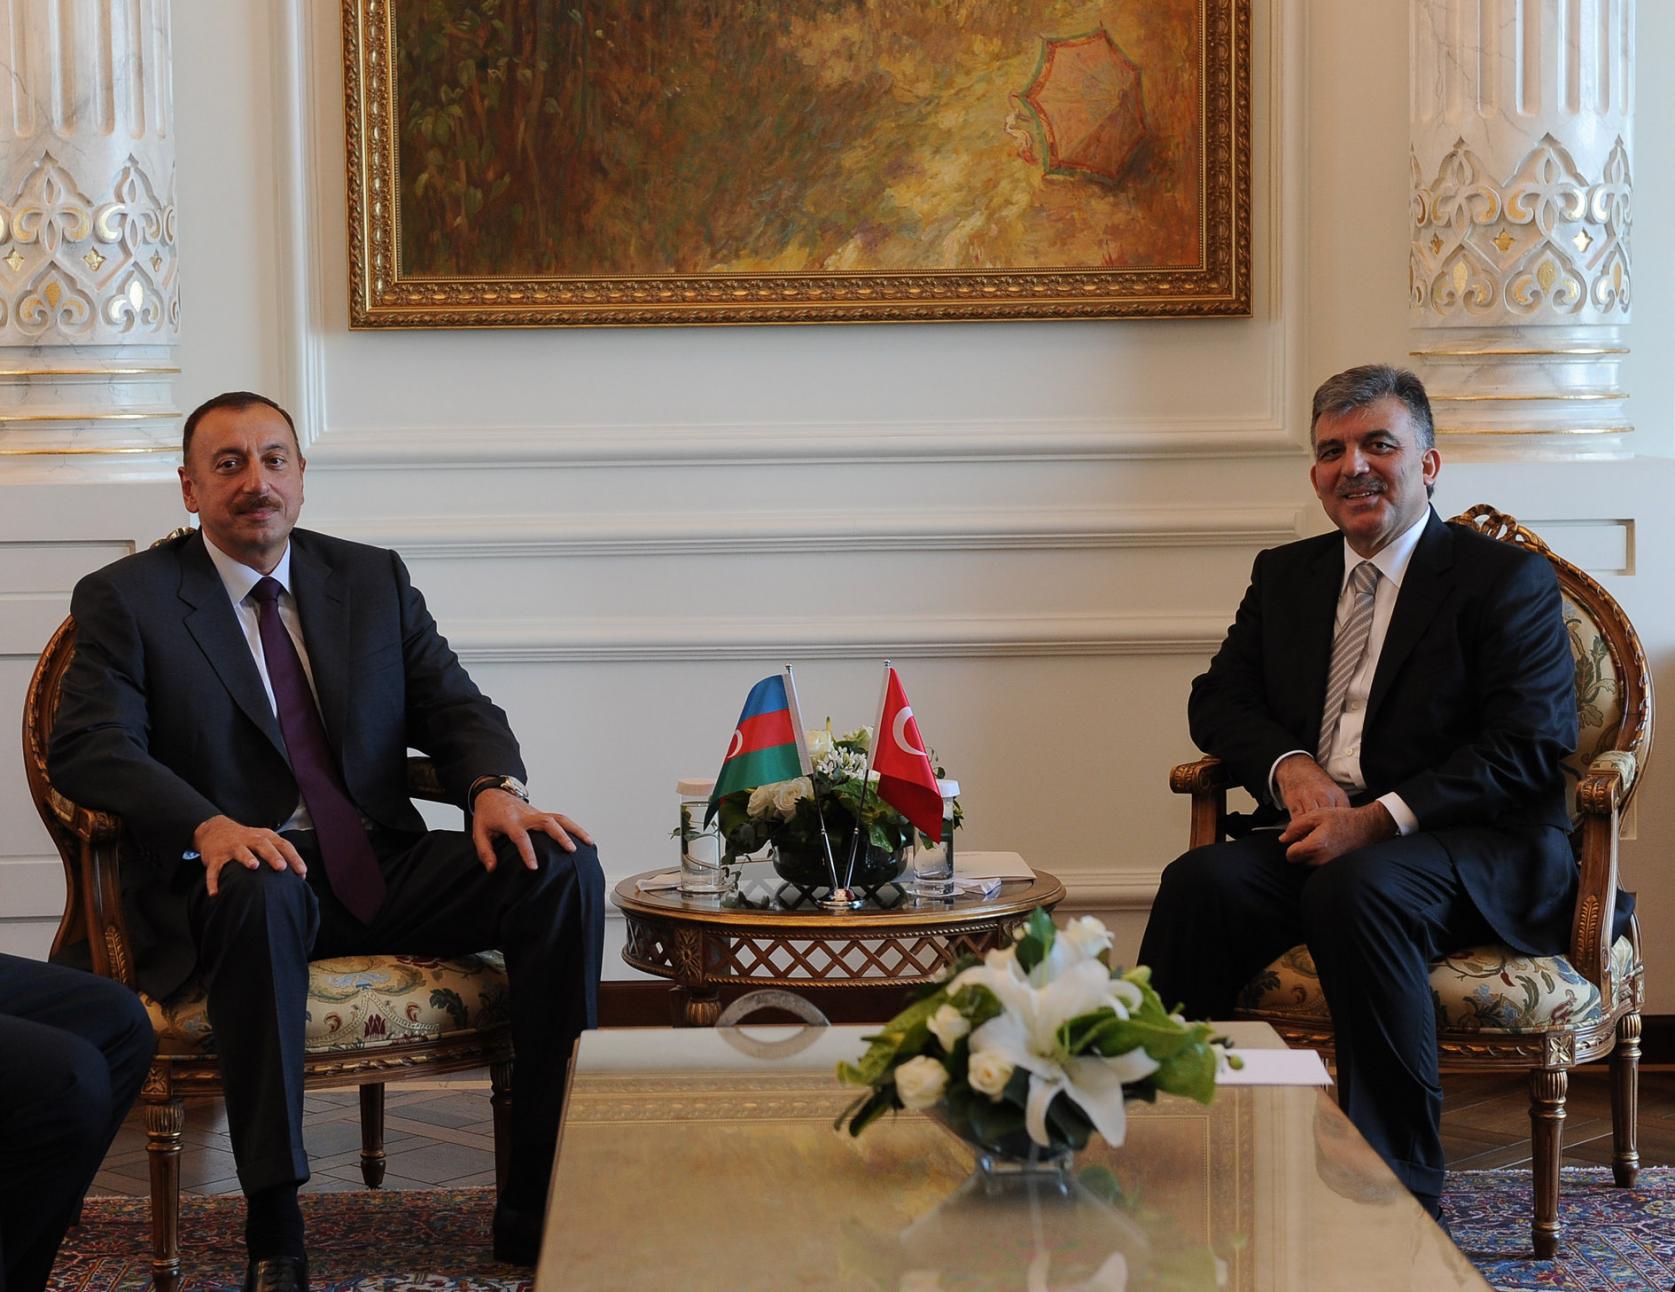 Турция президентская. Состоялся совместный обед президентов Азербайджана и Турции. Начался визит президента Азербайджана в Турцию.